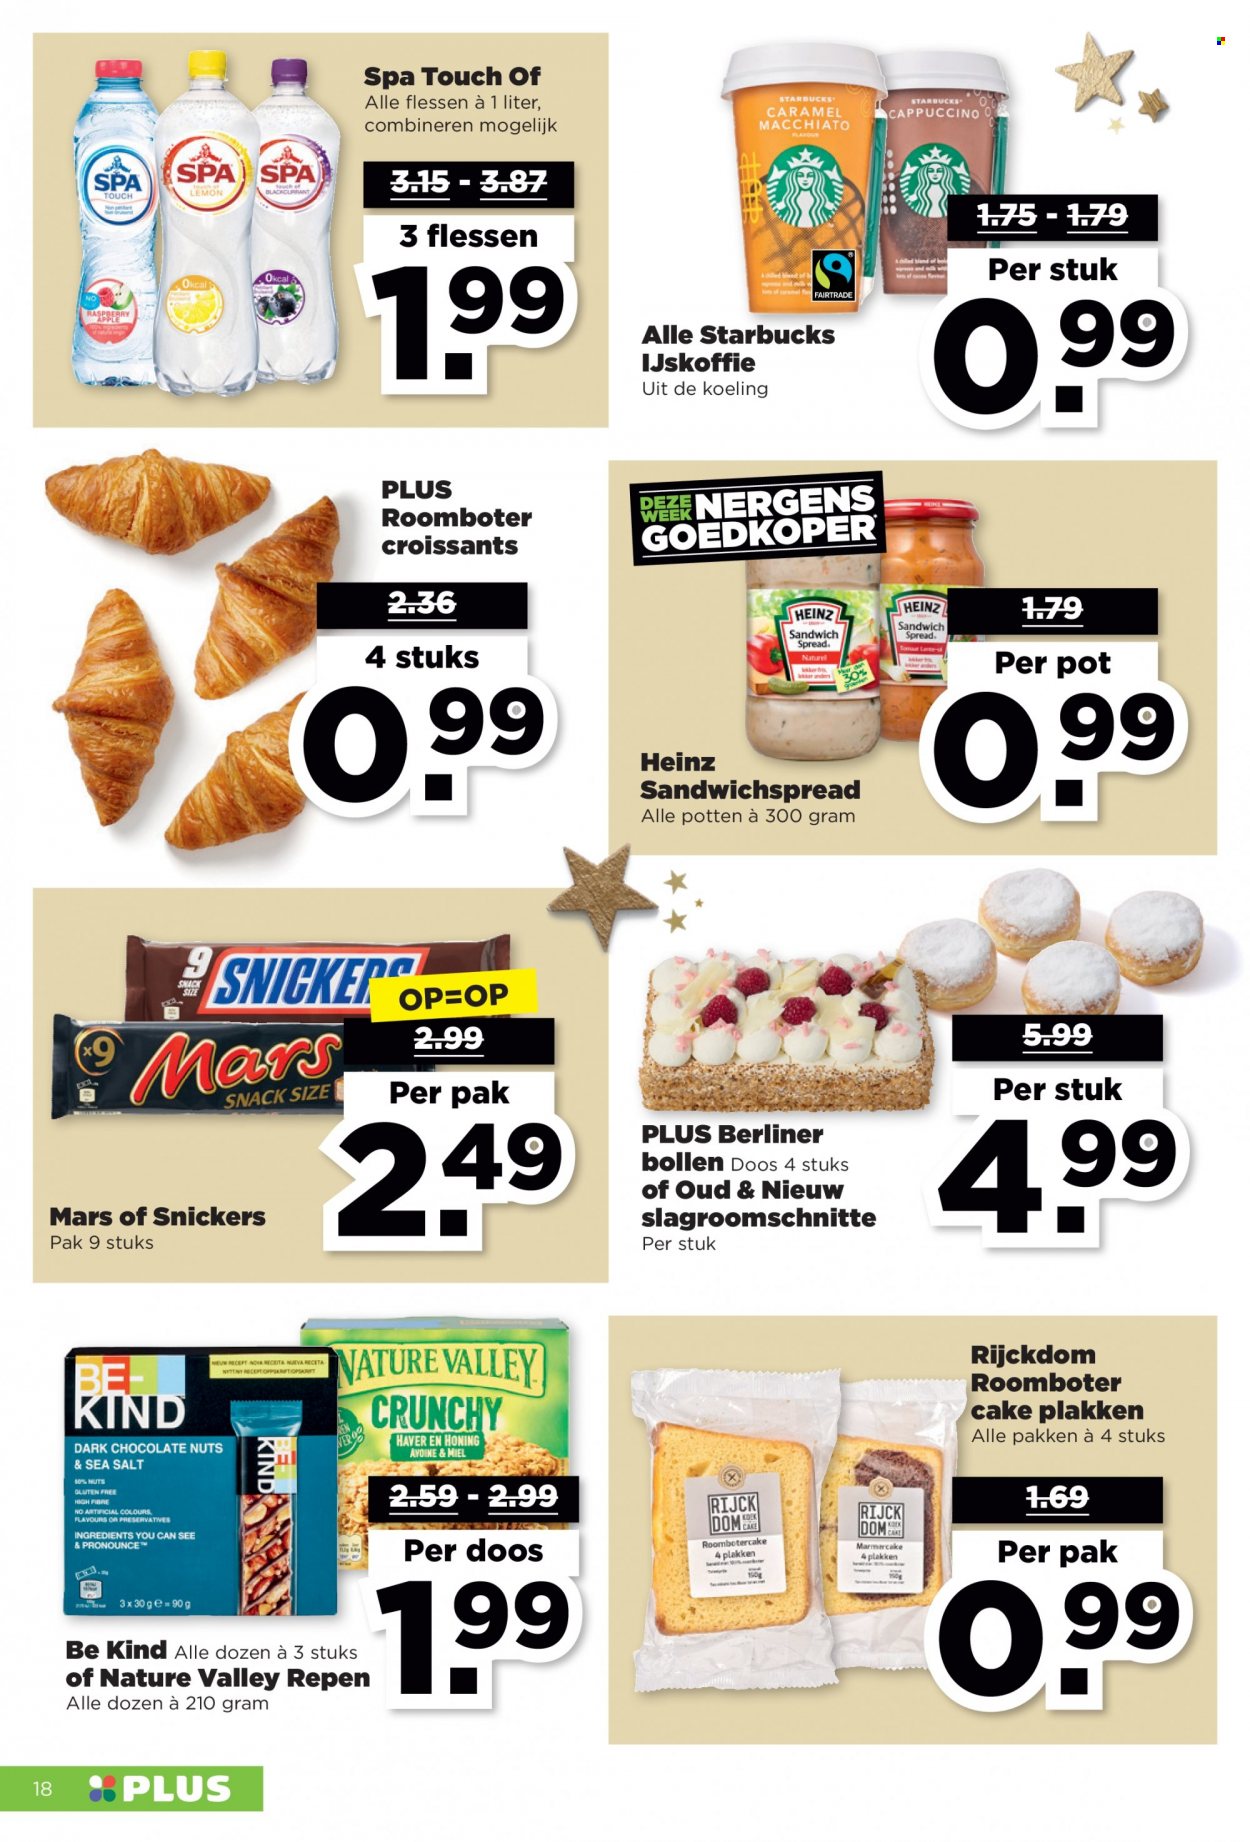 thumbnail - Plus-aanbieding - 26-12-2021 - 1-1-2022 -  producten in de aanbieding - croissant, roomboter, sandwichspread, Snickers, Heinz, ijskoffie. Pagina 18.